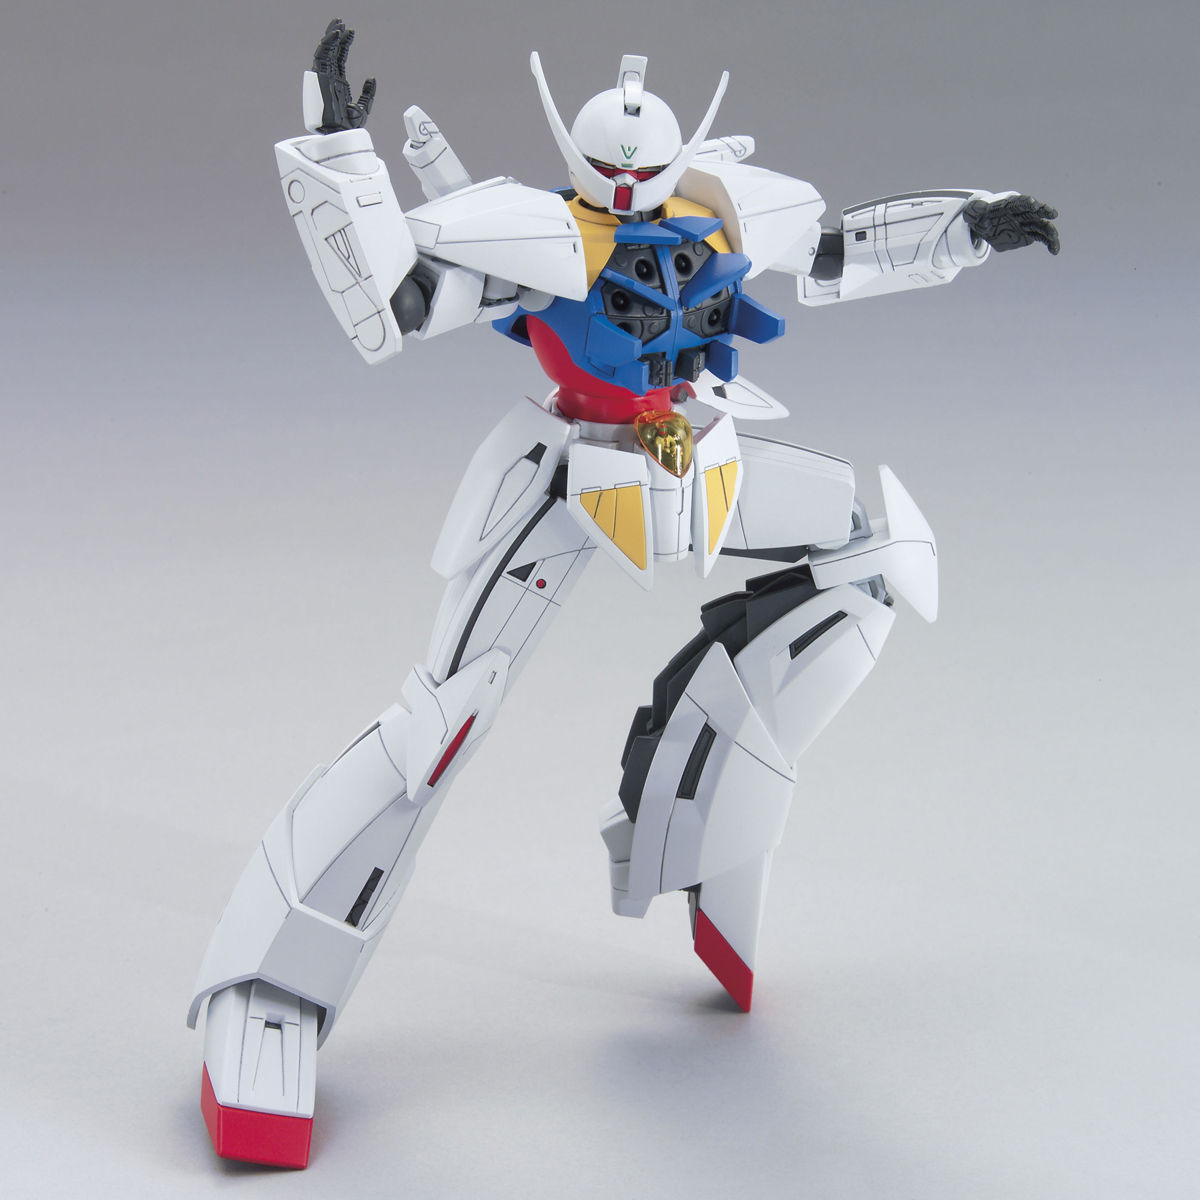 HG WD-M01 Turn A Gundam 1/144